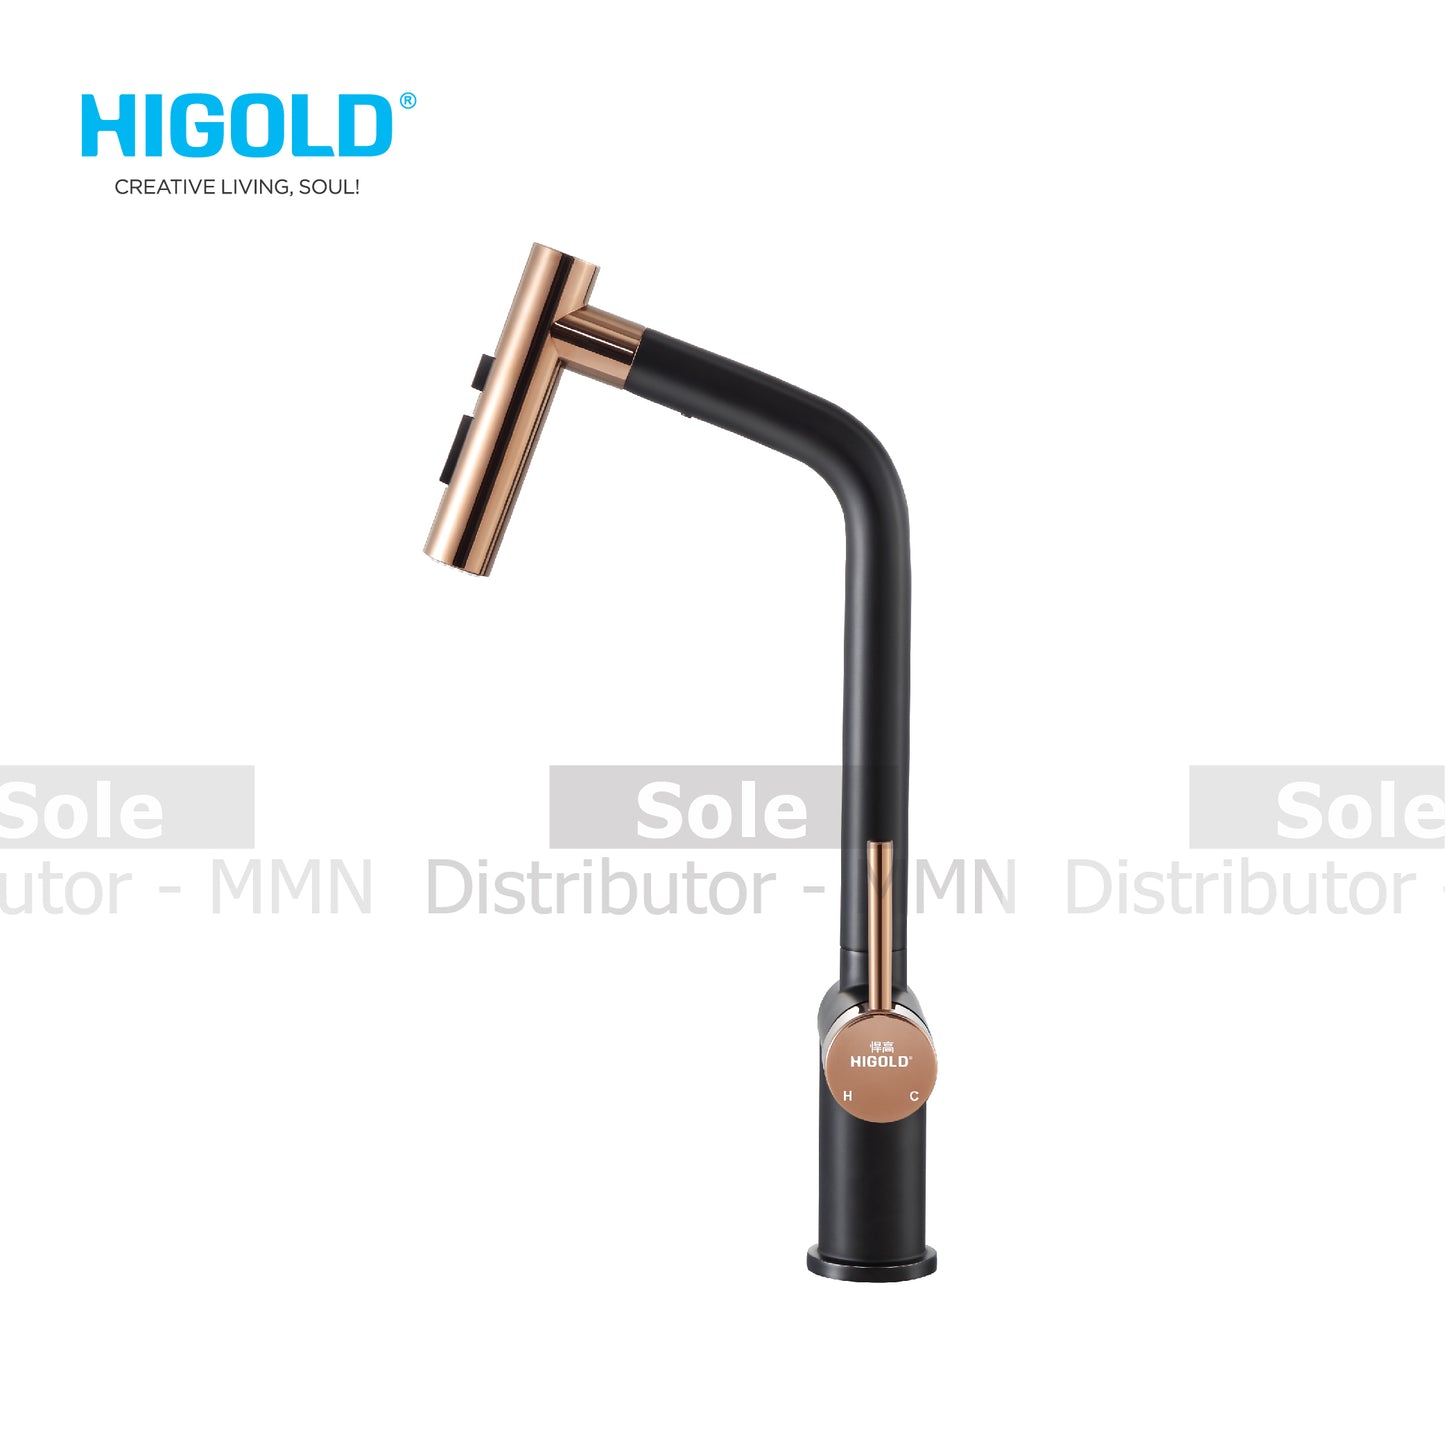 Higold පේටන්ට් බලපත්‍රලාභී Piniz PVD කුස්සියට උපකරණ කරාමය - HG980128